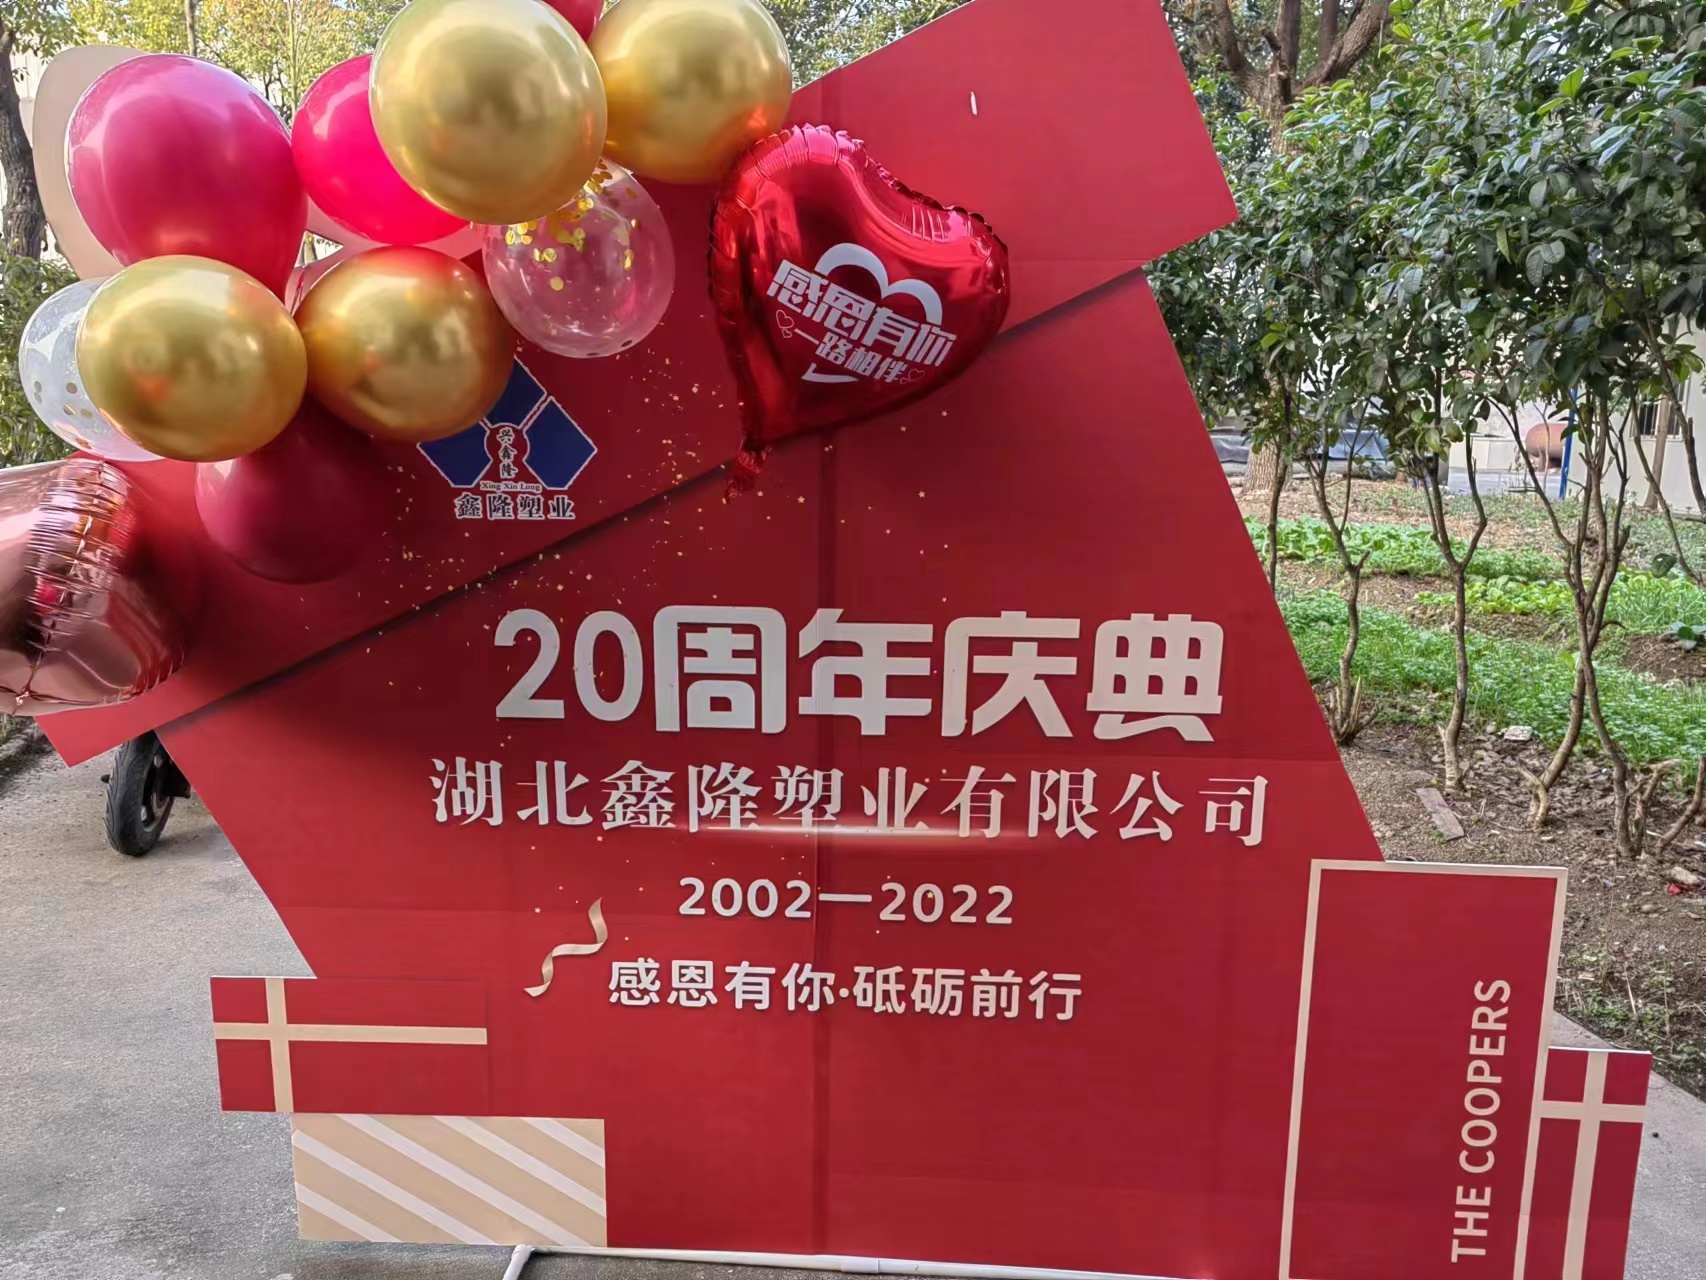 庆贺湖北鑫隆塑业公司成立二十周年